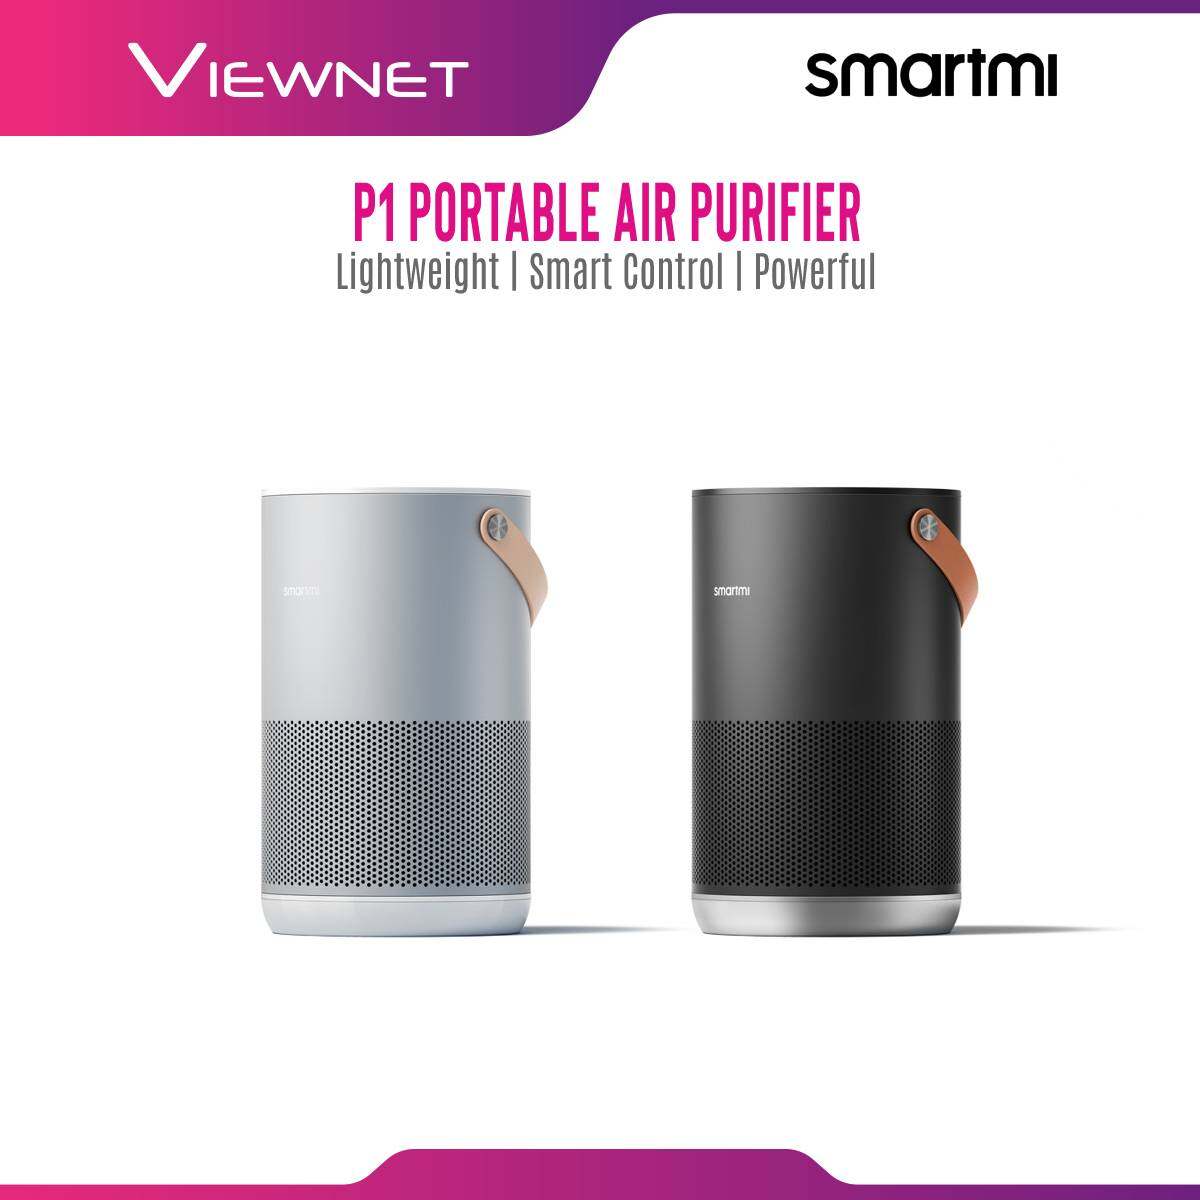 Smartmi P1 Portable Air Purifier